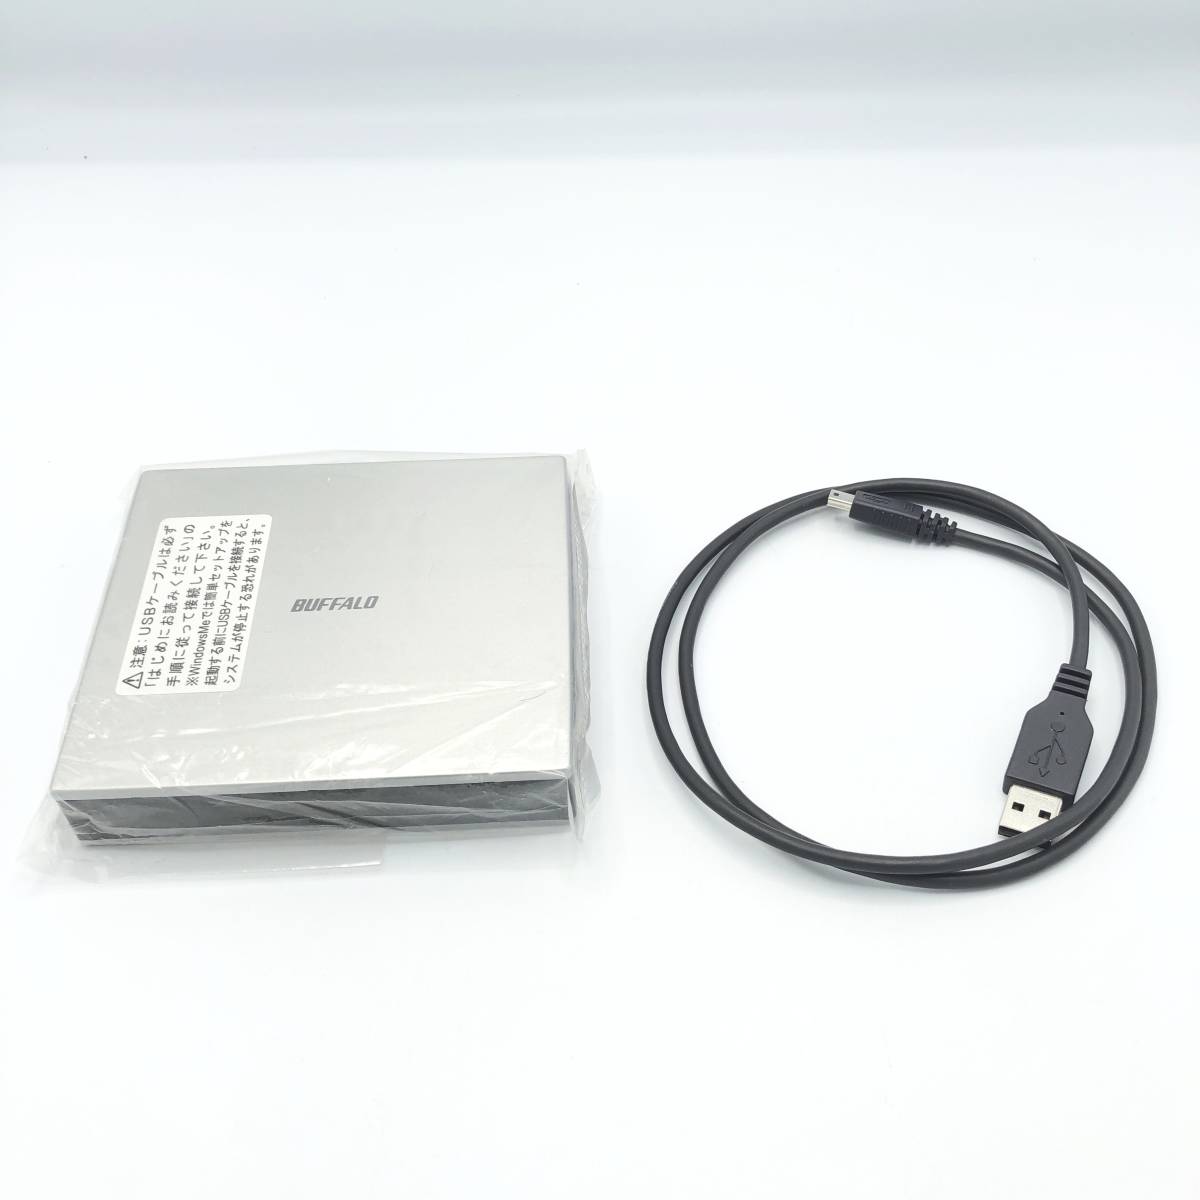 1.3GB - MO drive - Peripherals - Computer - bidJDM